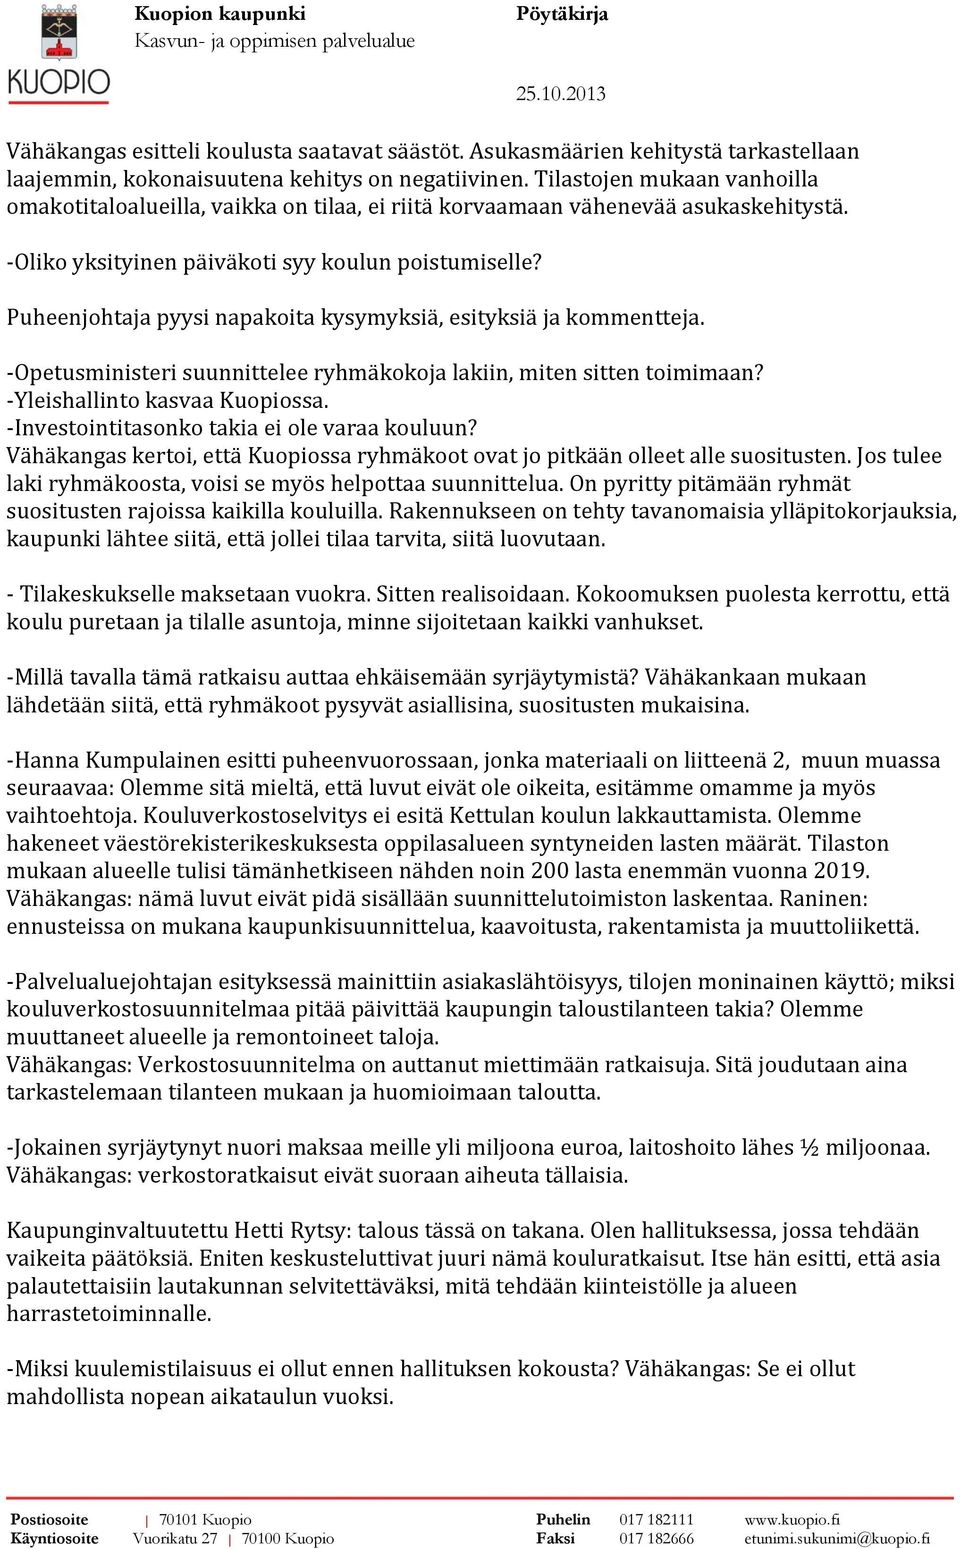 Puheenjohtaja pyysi napakoita kysymyksiä, esityksiä ja kommentteja. -Opetusministeri suunnittelee ryhmäkokoja lakiin, miten sitten toimimaan? -Yleishallinto kasvaa Kuopiossa.